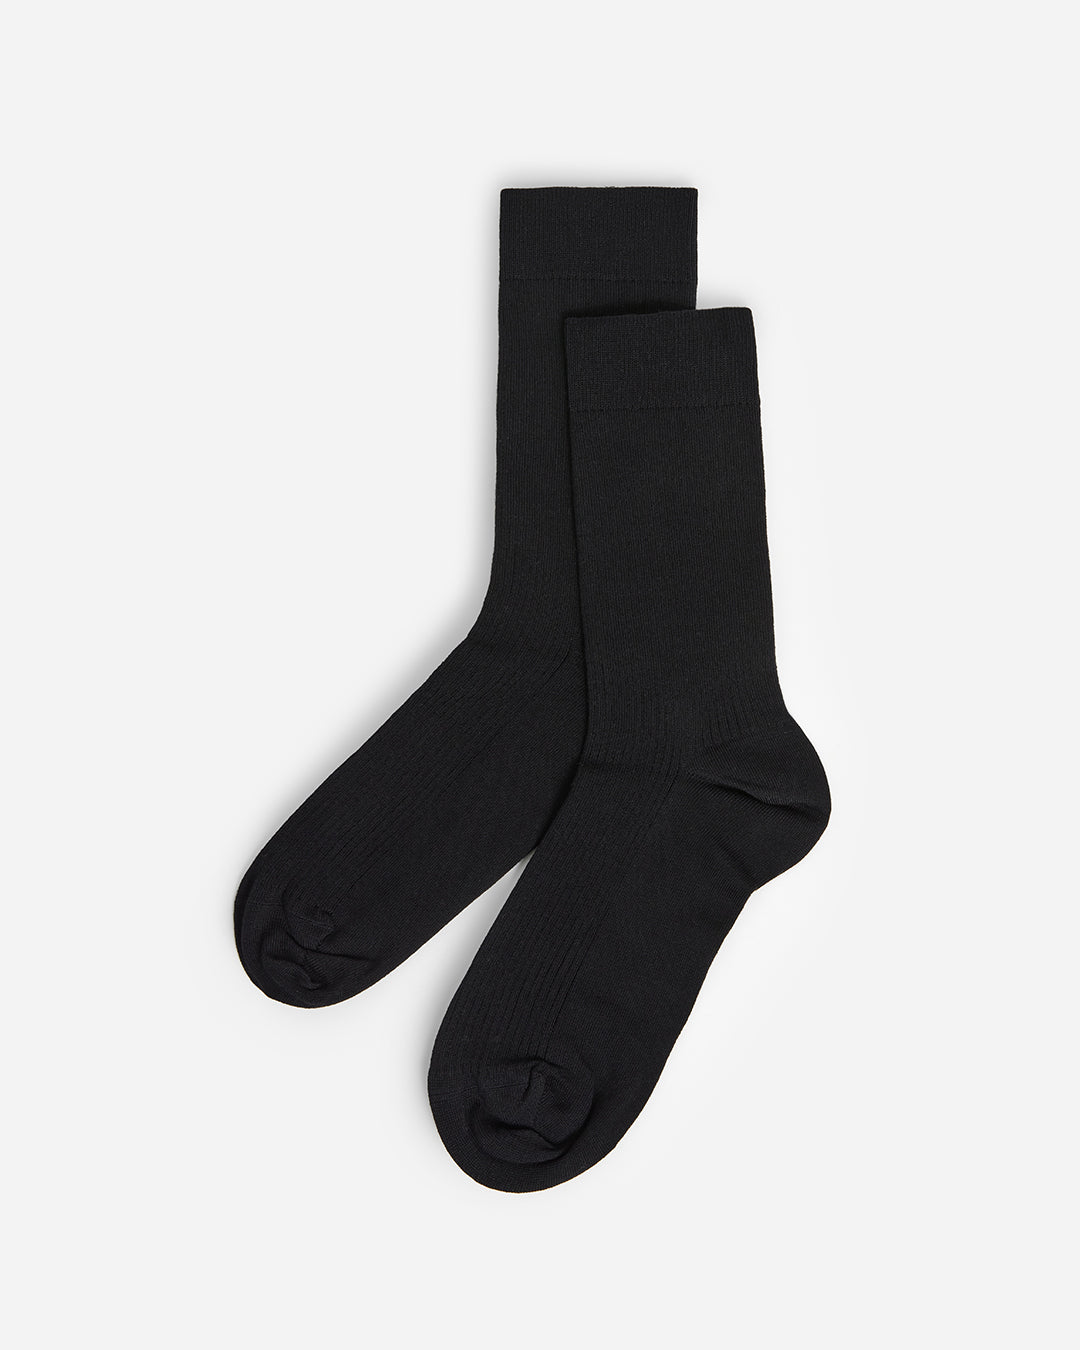 Flattered Sock Mercerized Cotton Black